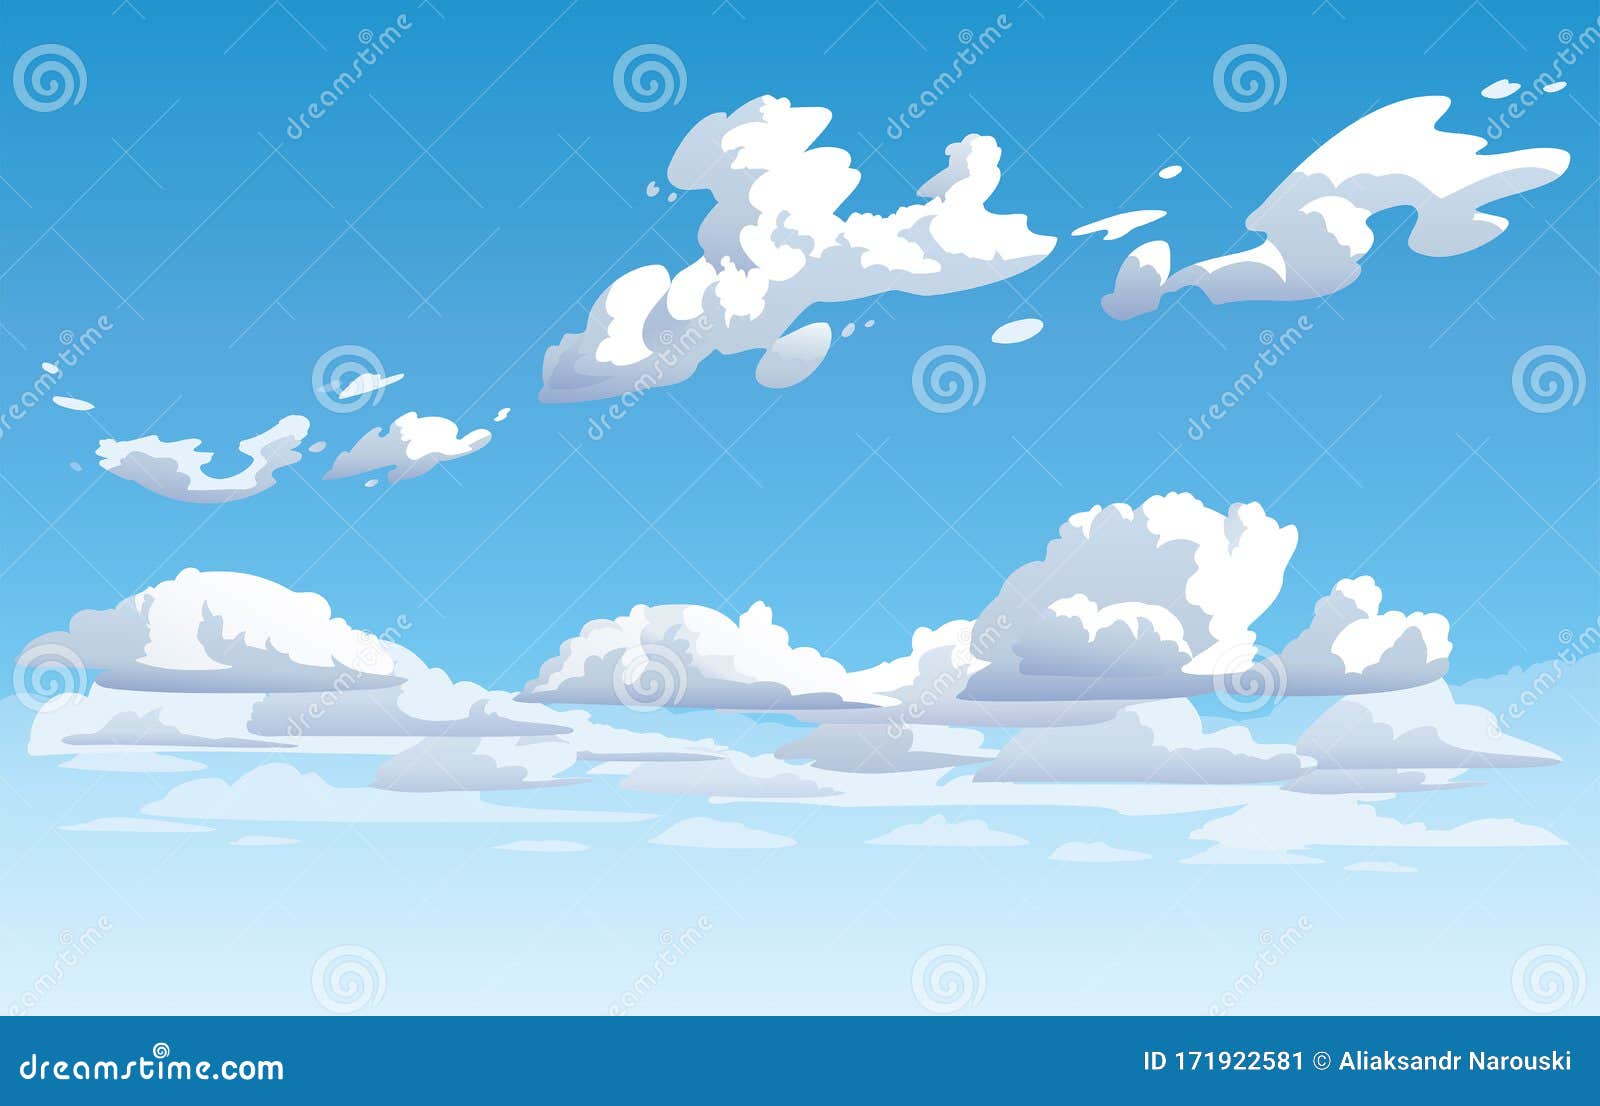 Bầu trời xanh đầy mây là một cảnh tượng tuyệt đẹp, và khi được tái hiện dưới dạng vector cảnh nền anime, nó sẽ khiến bạn cảm thấy thật sự đặc biệt. Hãy đắm mình trong hình ảnh đẹp như mơ này và tận hưởng cảm giác thật thư giãn khi bạn ngắm nhìn bức hình này trên thiết bị của mình.